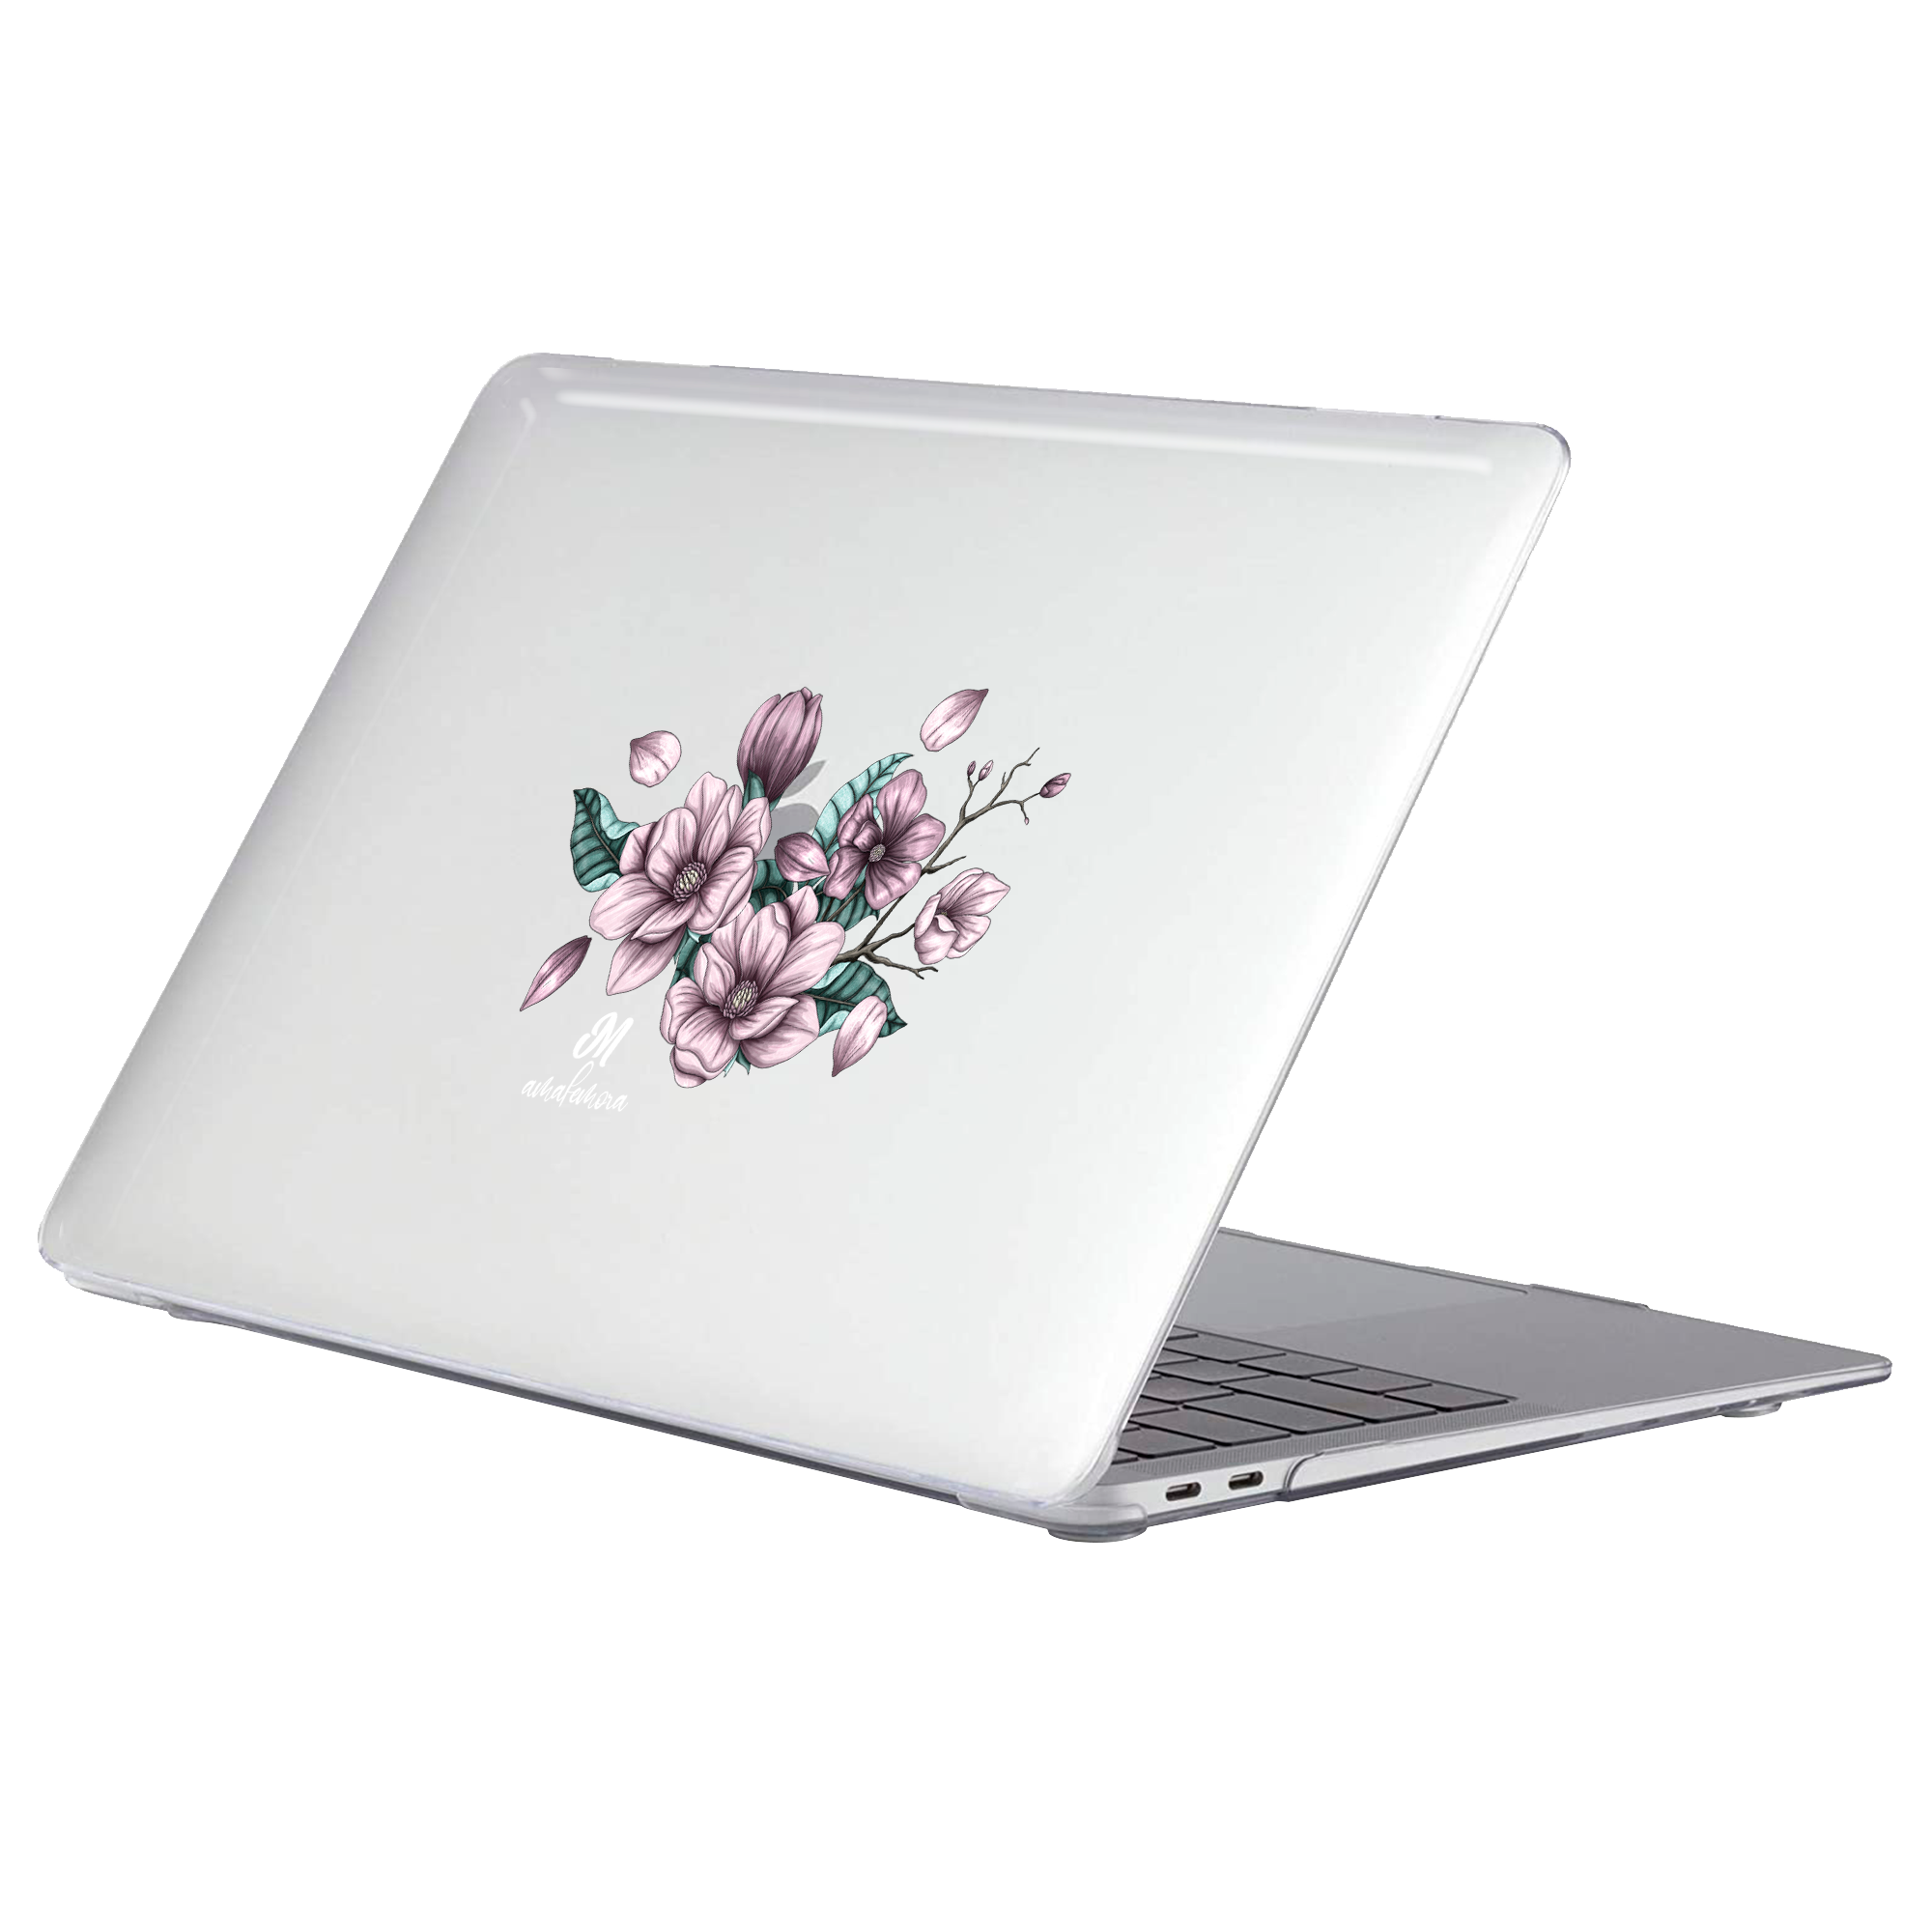 Magnolias MacBook Case - Mandala Cases